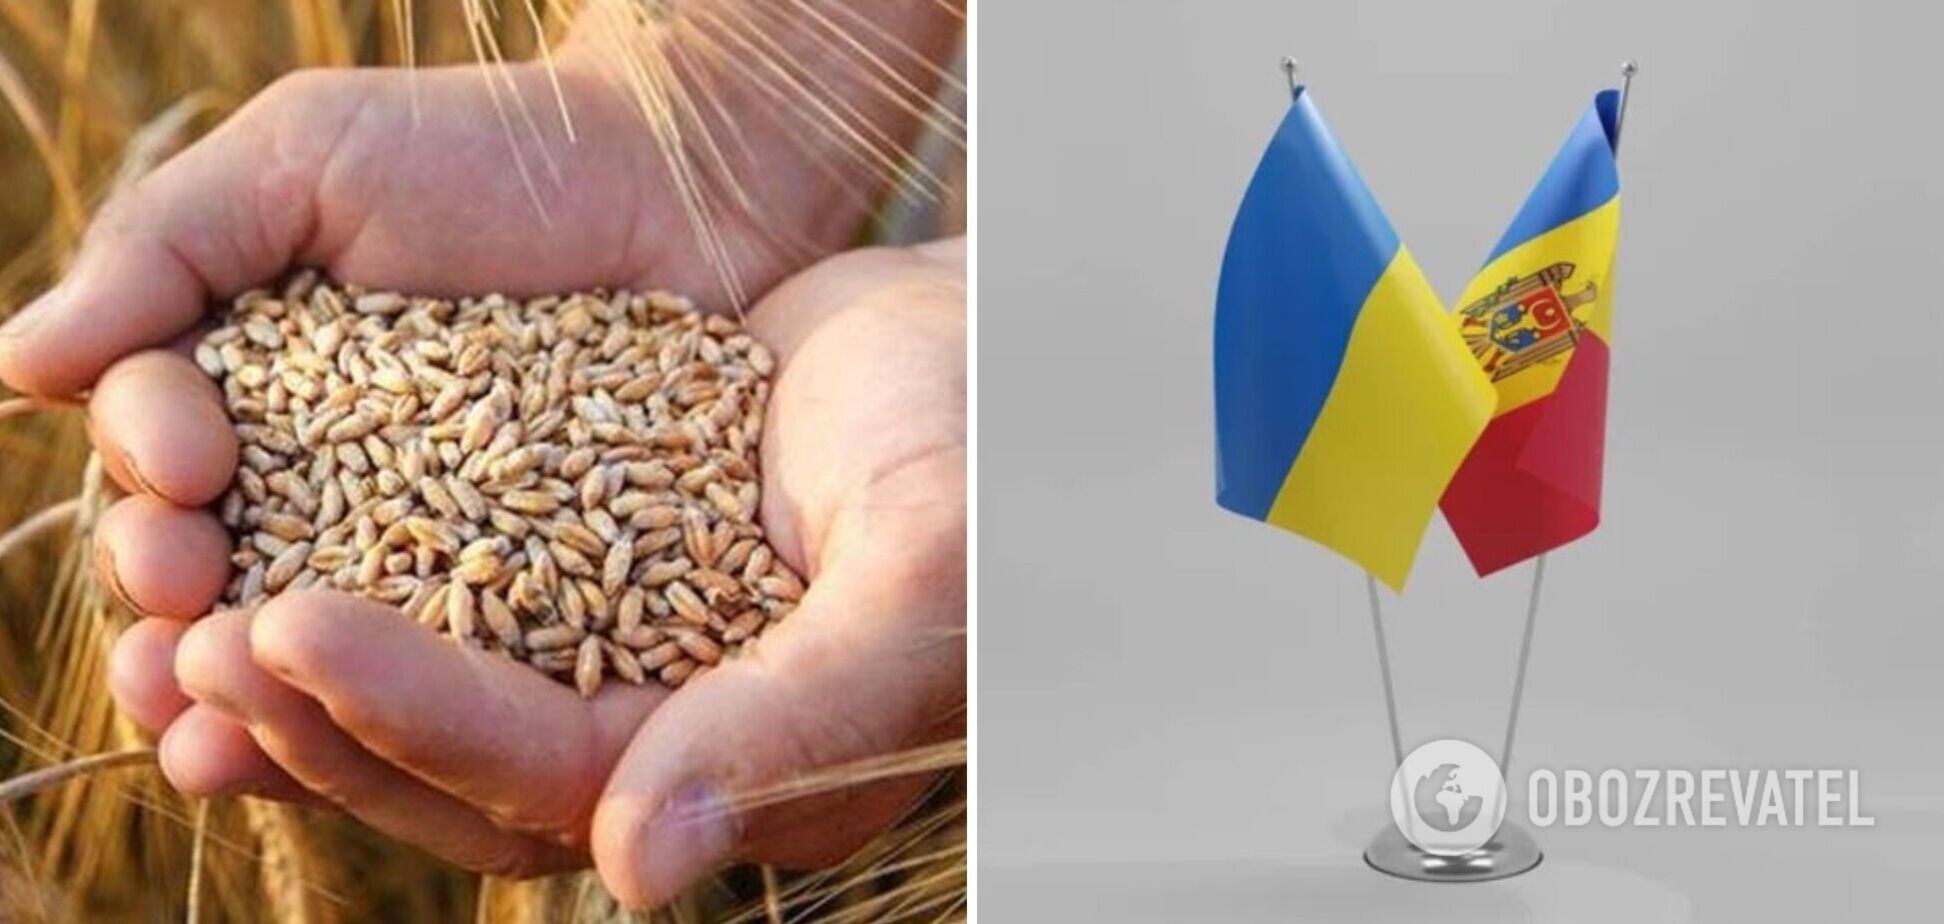 В ответ на недружественные действия Украина готовит запрет всего импорта из Молдовы